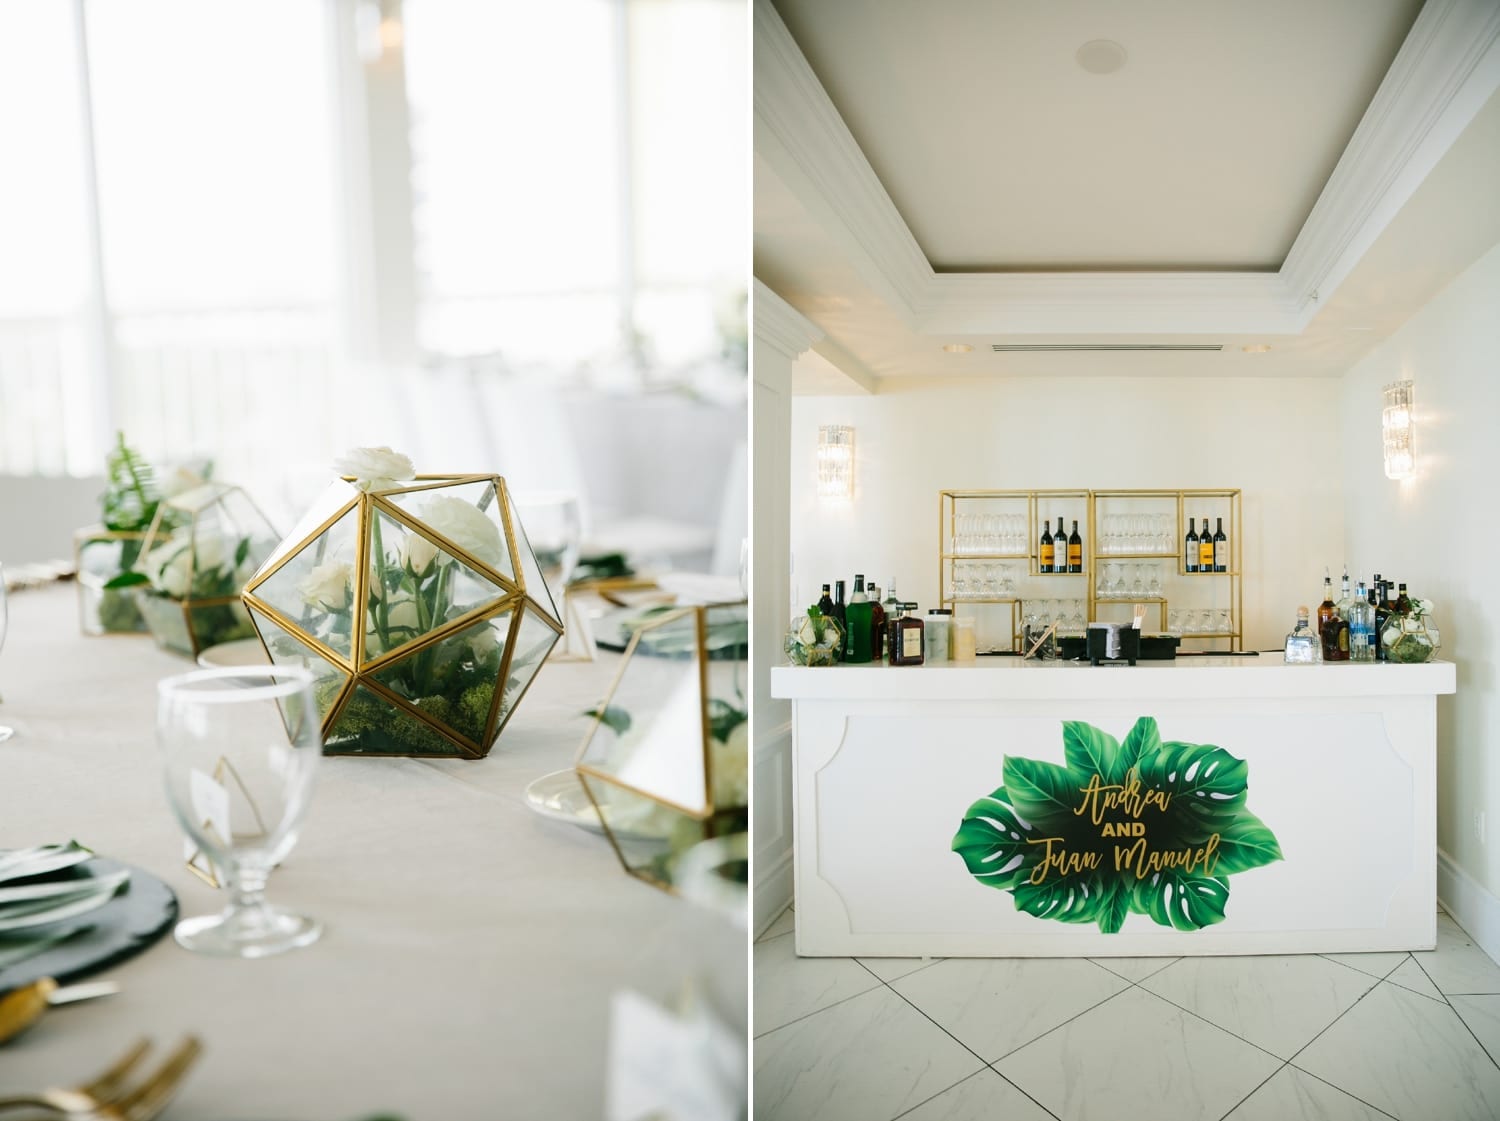 Modern brunch wedding details. Beautiful Pelican Grand Beach Resort Wedding